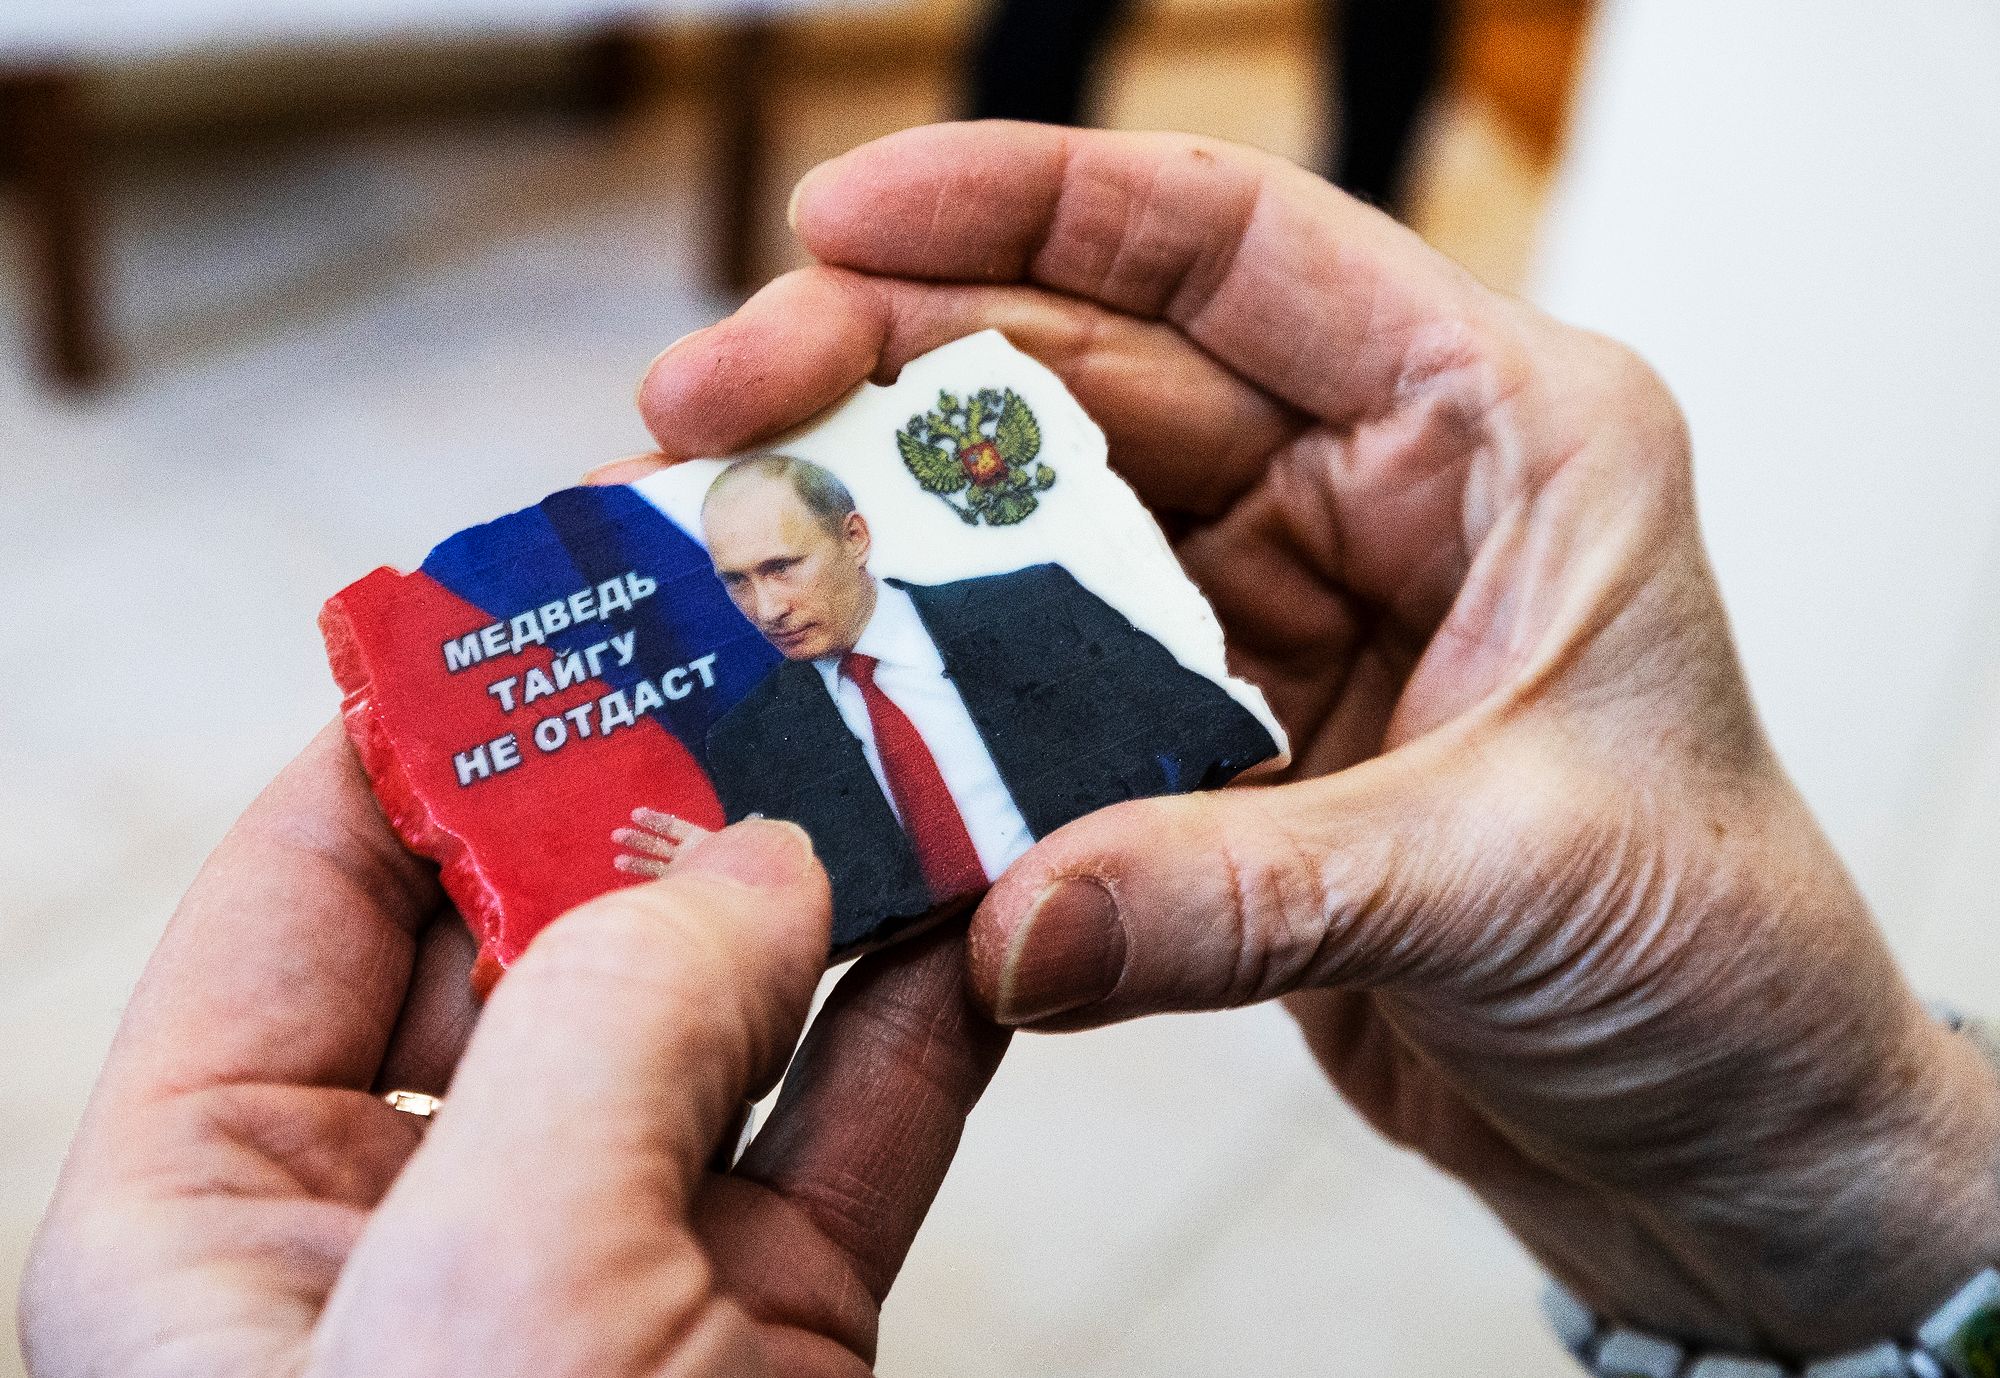 Larissa Kylliäinen kauhistuu huomatessaan, että hänellä on jääkaapin ovessa Vladimir Putin -magneetti. ”Tuo pitää ottaa pois!” © Juha Metso